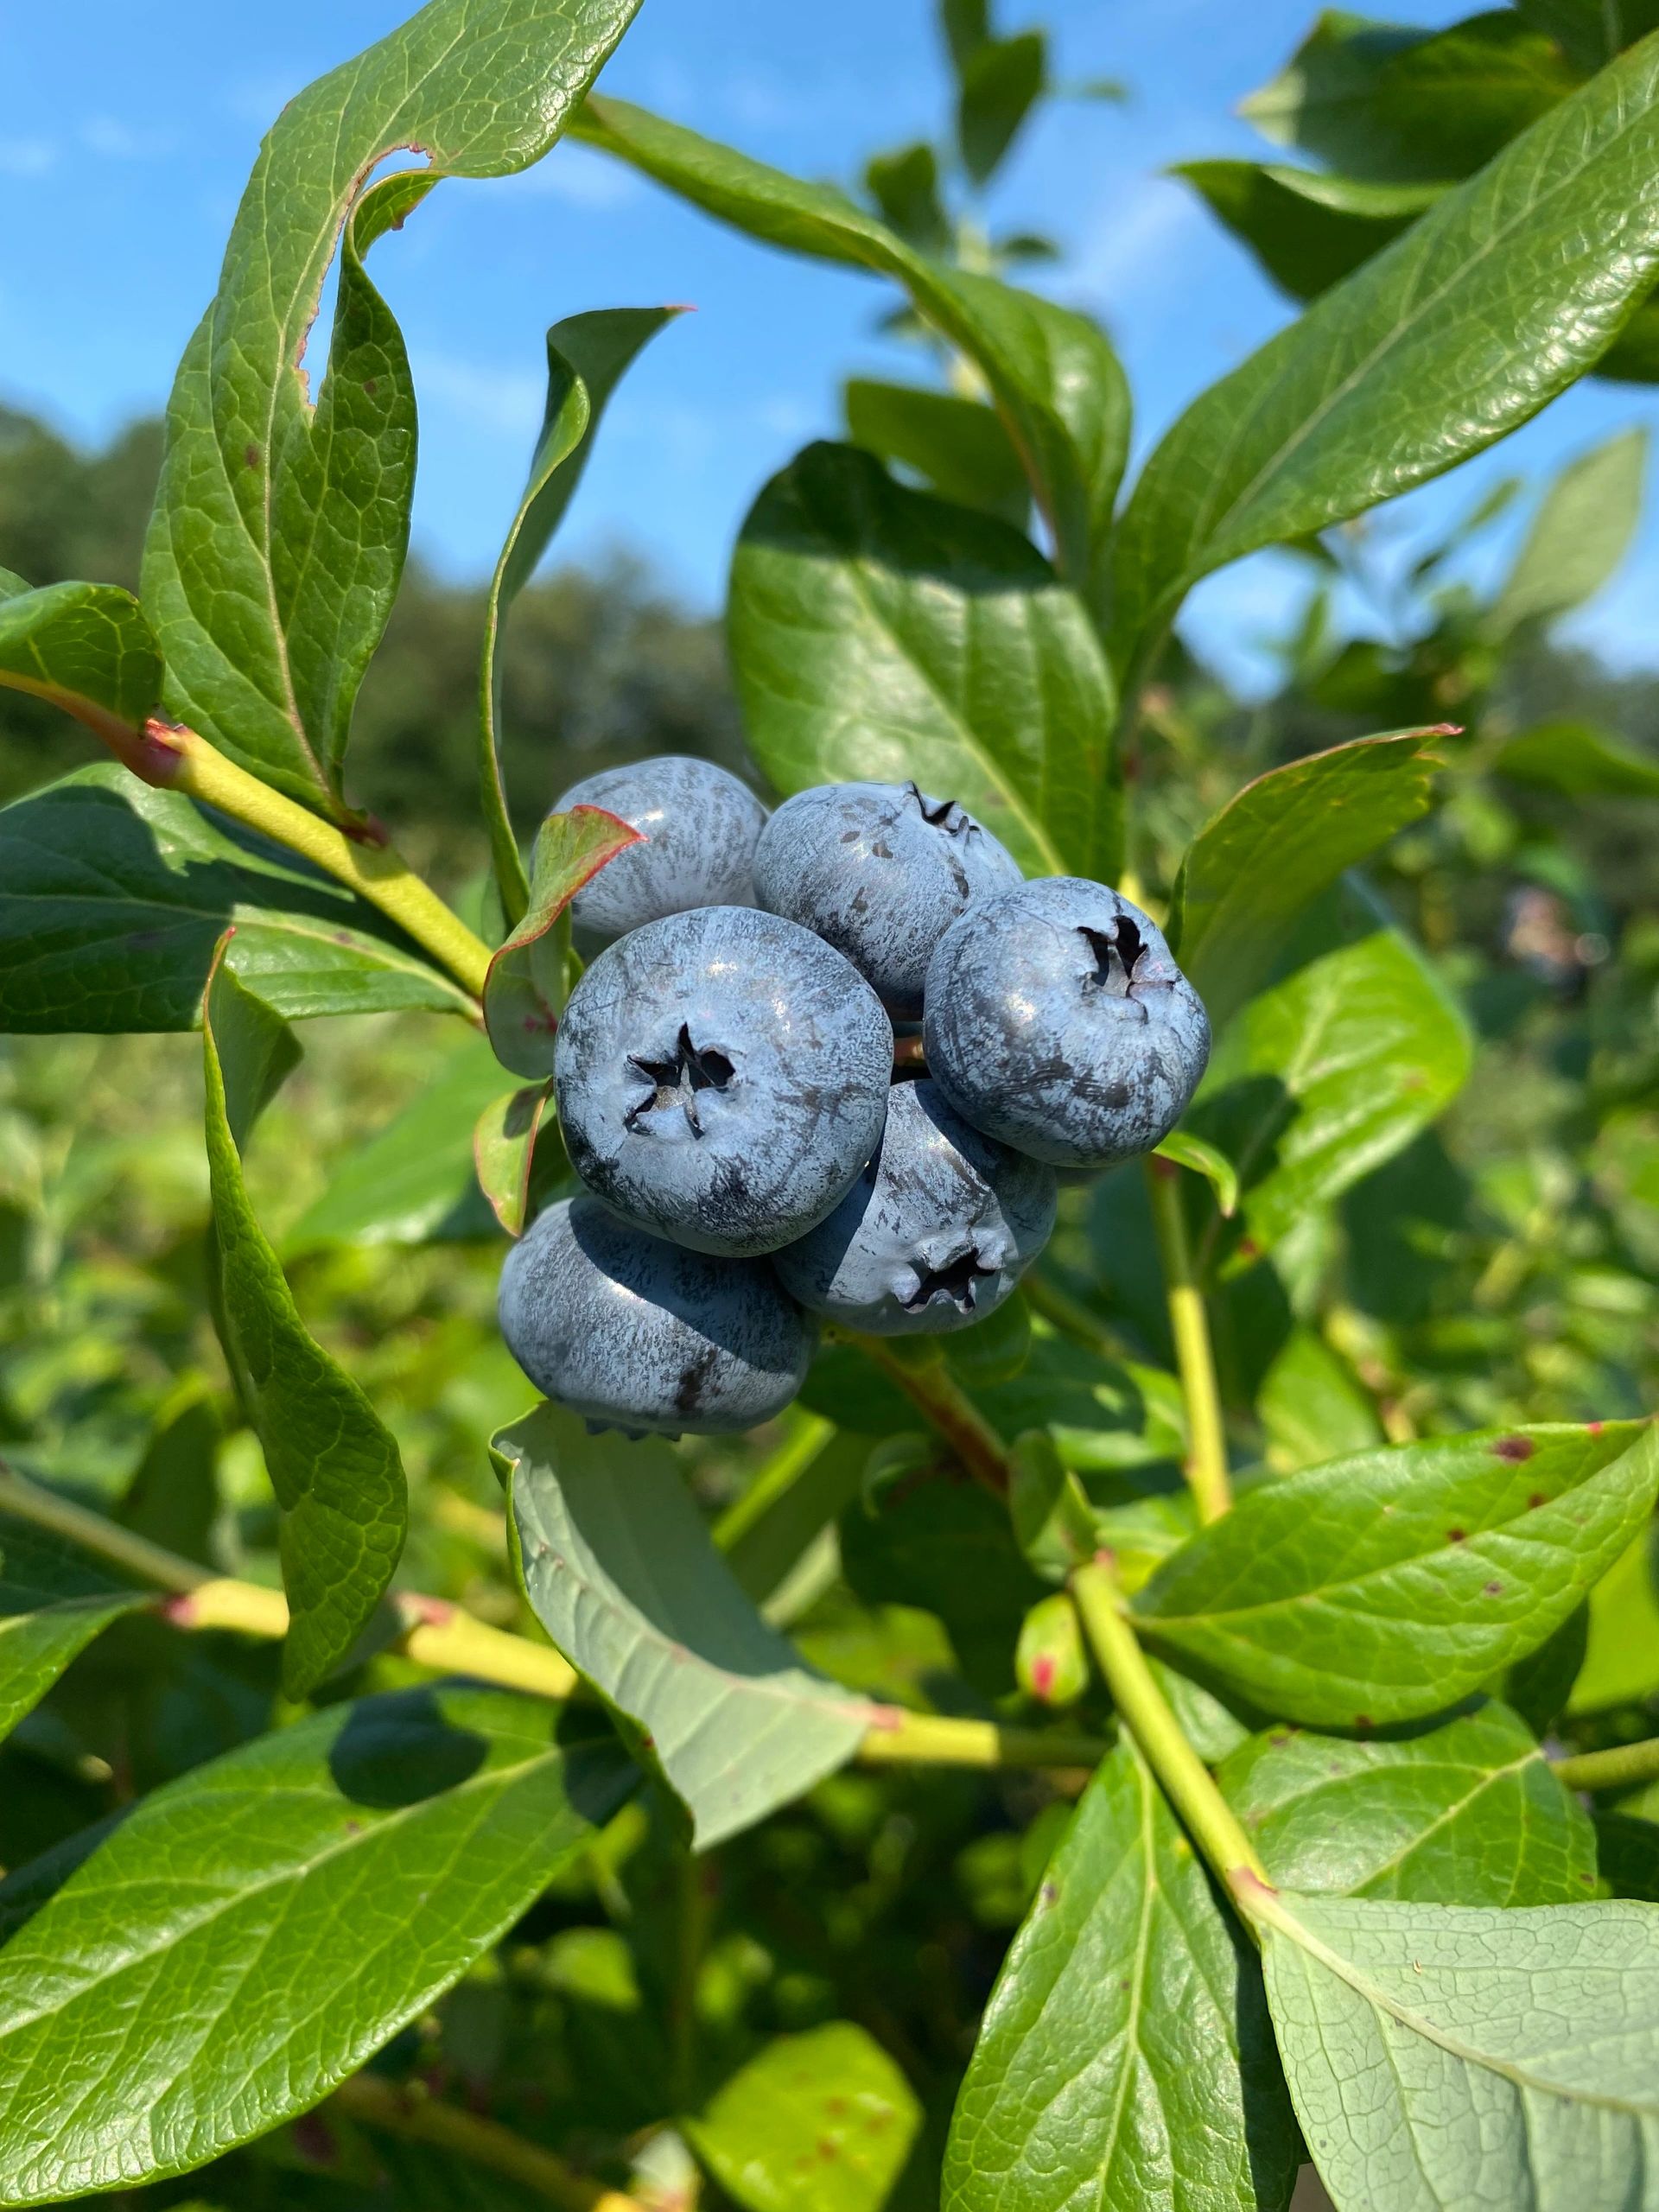 Gianetti's U-Pick Blueberries in Franklin, Massachusetts